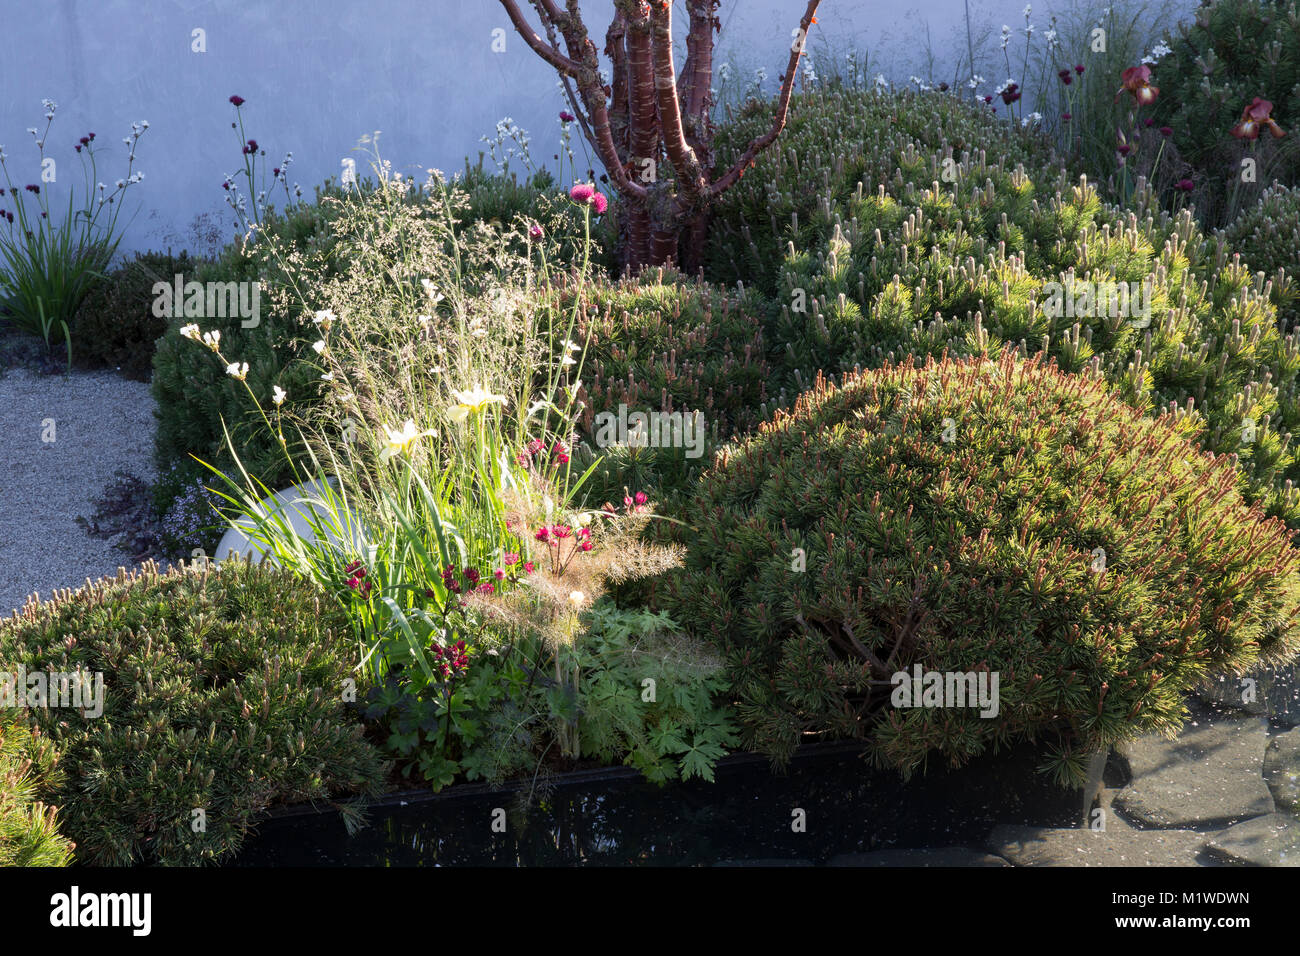 The BBC Radio 2 Jeremy Vine Texture Garden, RHS Chelsea Flower Show 2017 Stock Photo